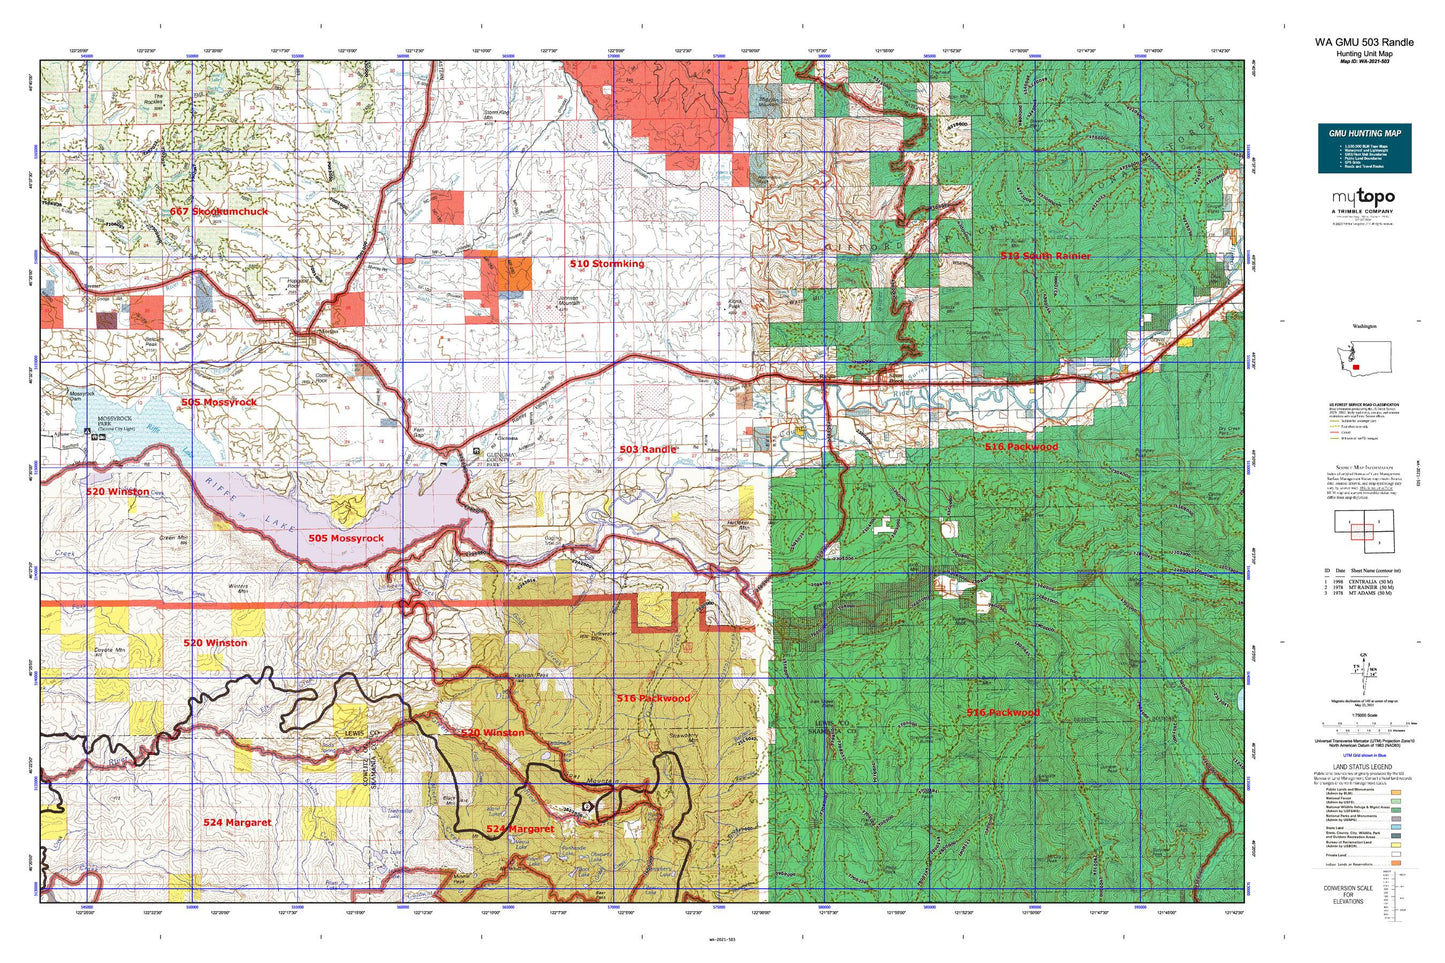 Washington GMU 503 Randle Map Image